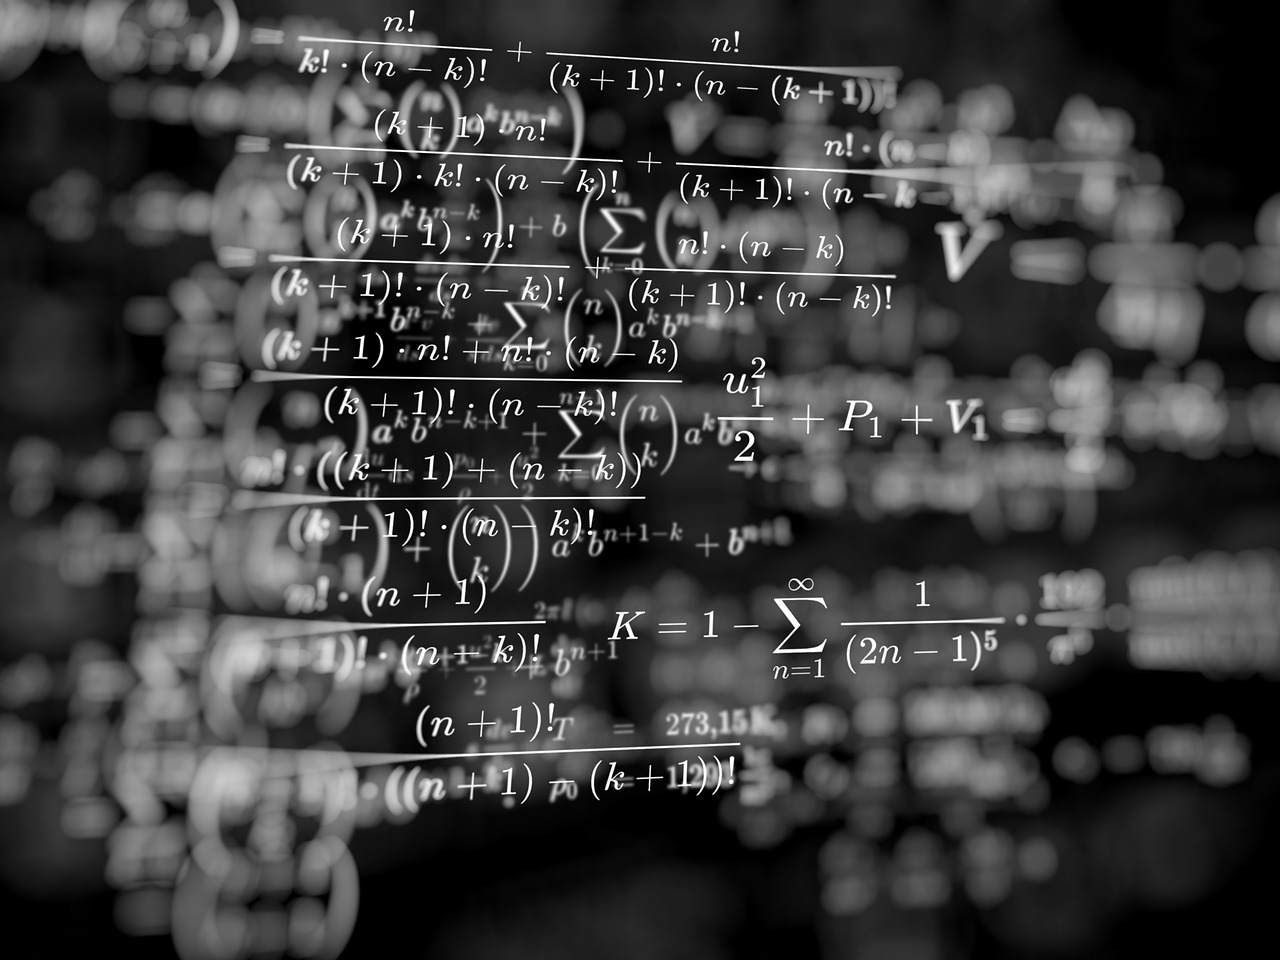 A fizikai törvények valójában nem léteznek – mondja az elméleti fizikus